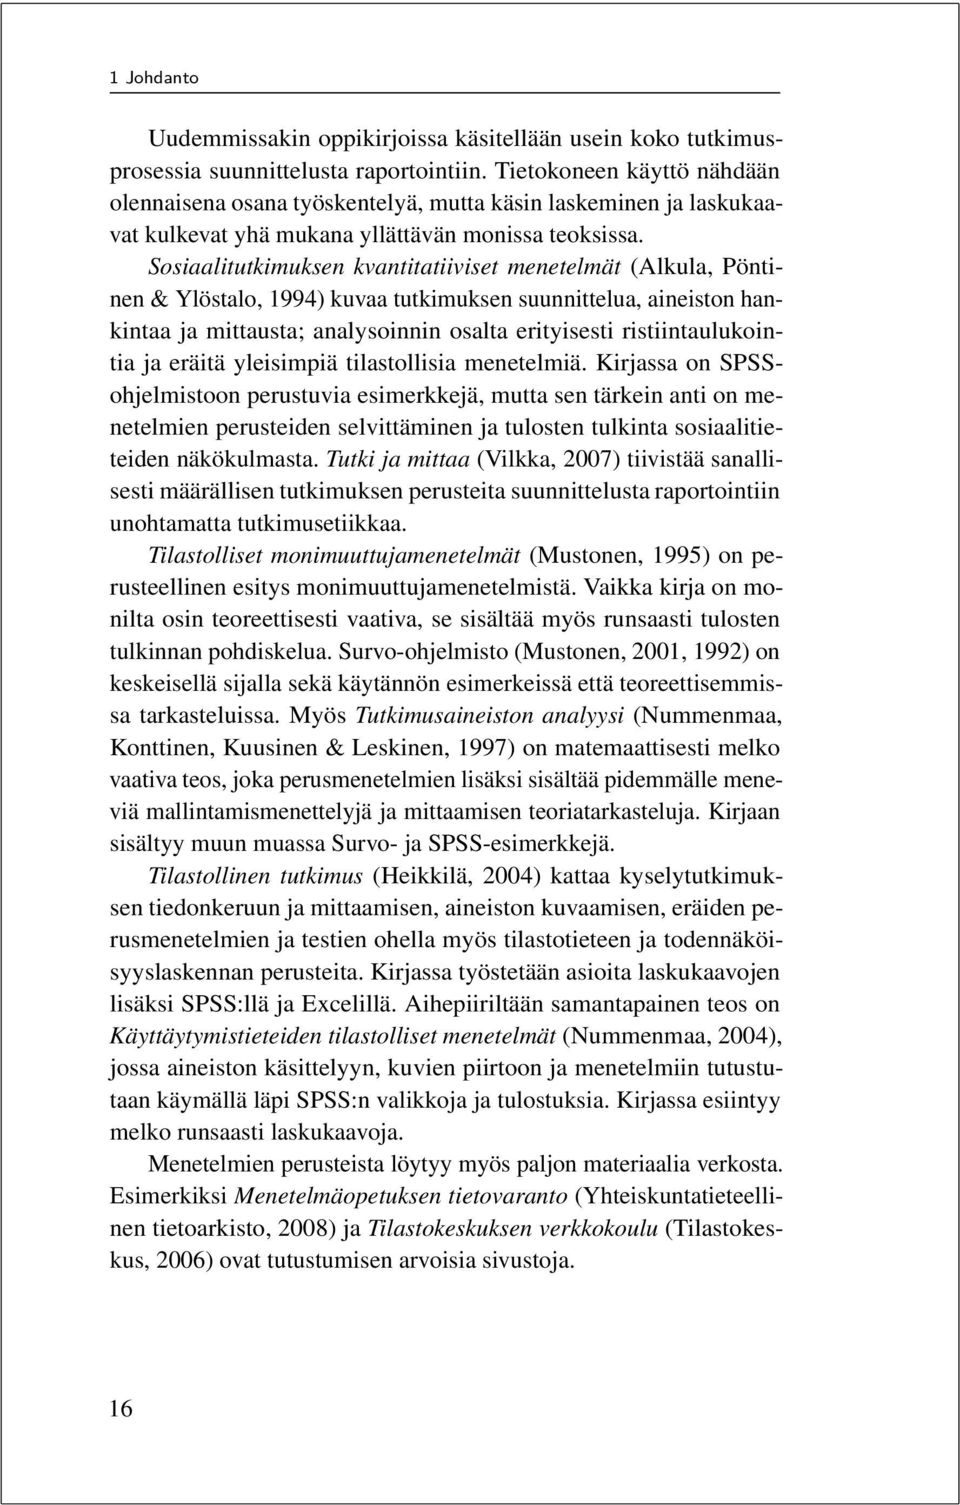 Sosiaalitutkimuksen kvantitatiiviset menetelmät (Alkula, Pöntinen & Ylöstalo, 1994) kuvaa tutkimuksen suunnittelua, aineiston hankintaa ja mittausta; analysoinnin osalta erityisesti